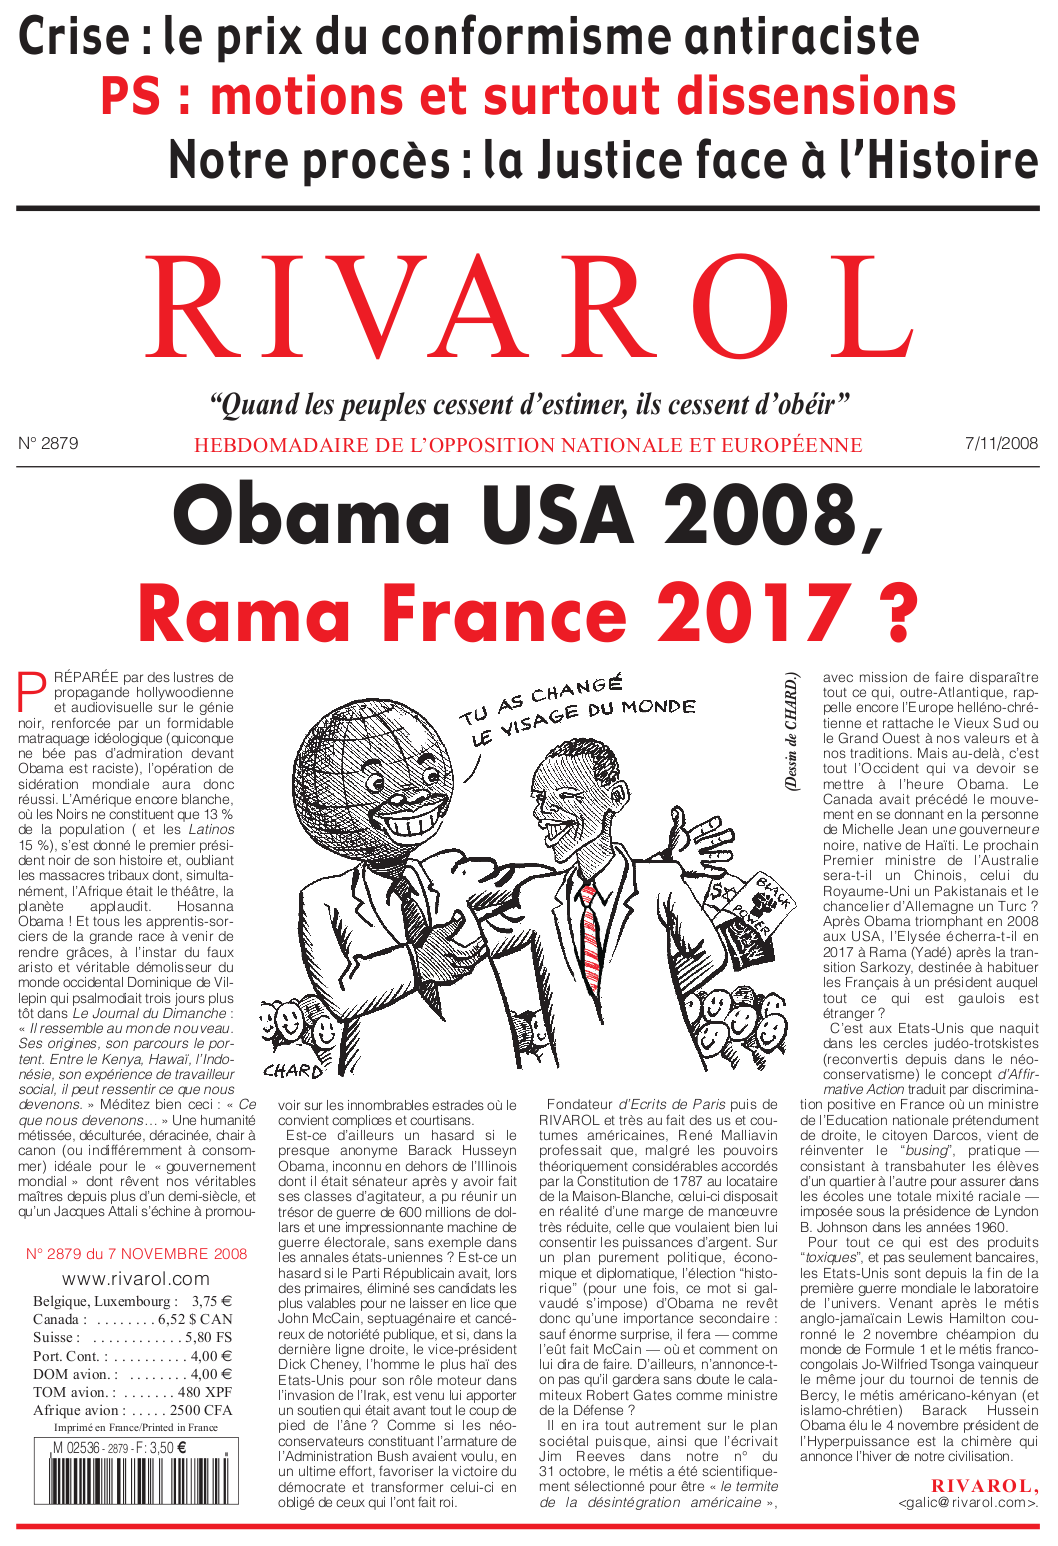 Rivarol n°2879 version numérique (PDF)